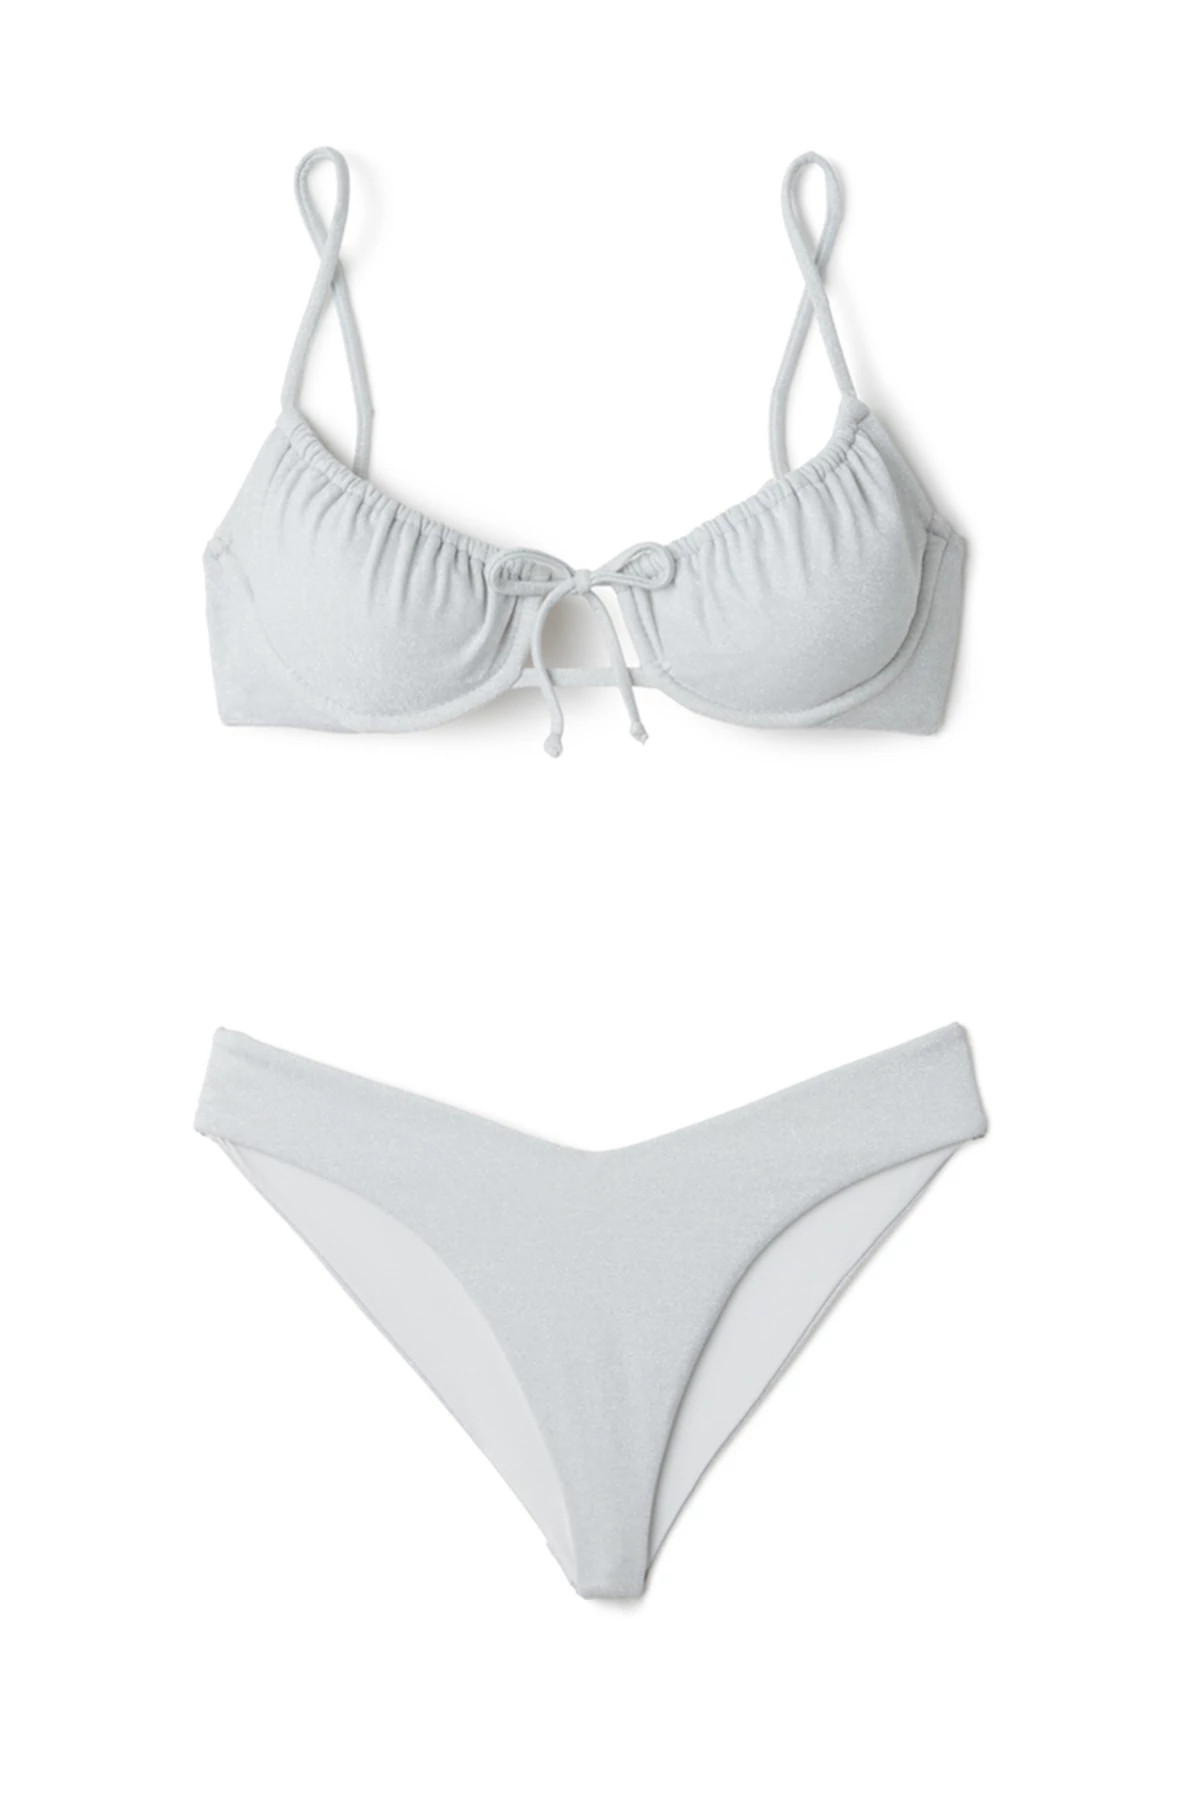 Catalina Micro Bikini Top, String Swimwear, Blue Multi Minimal